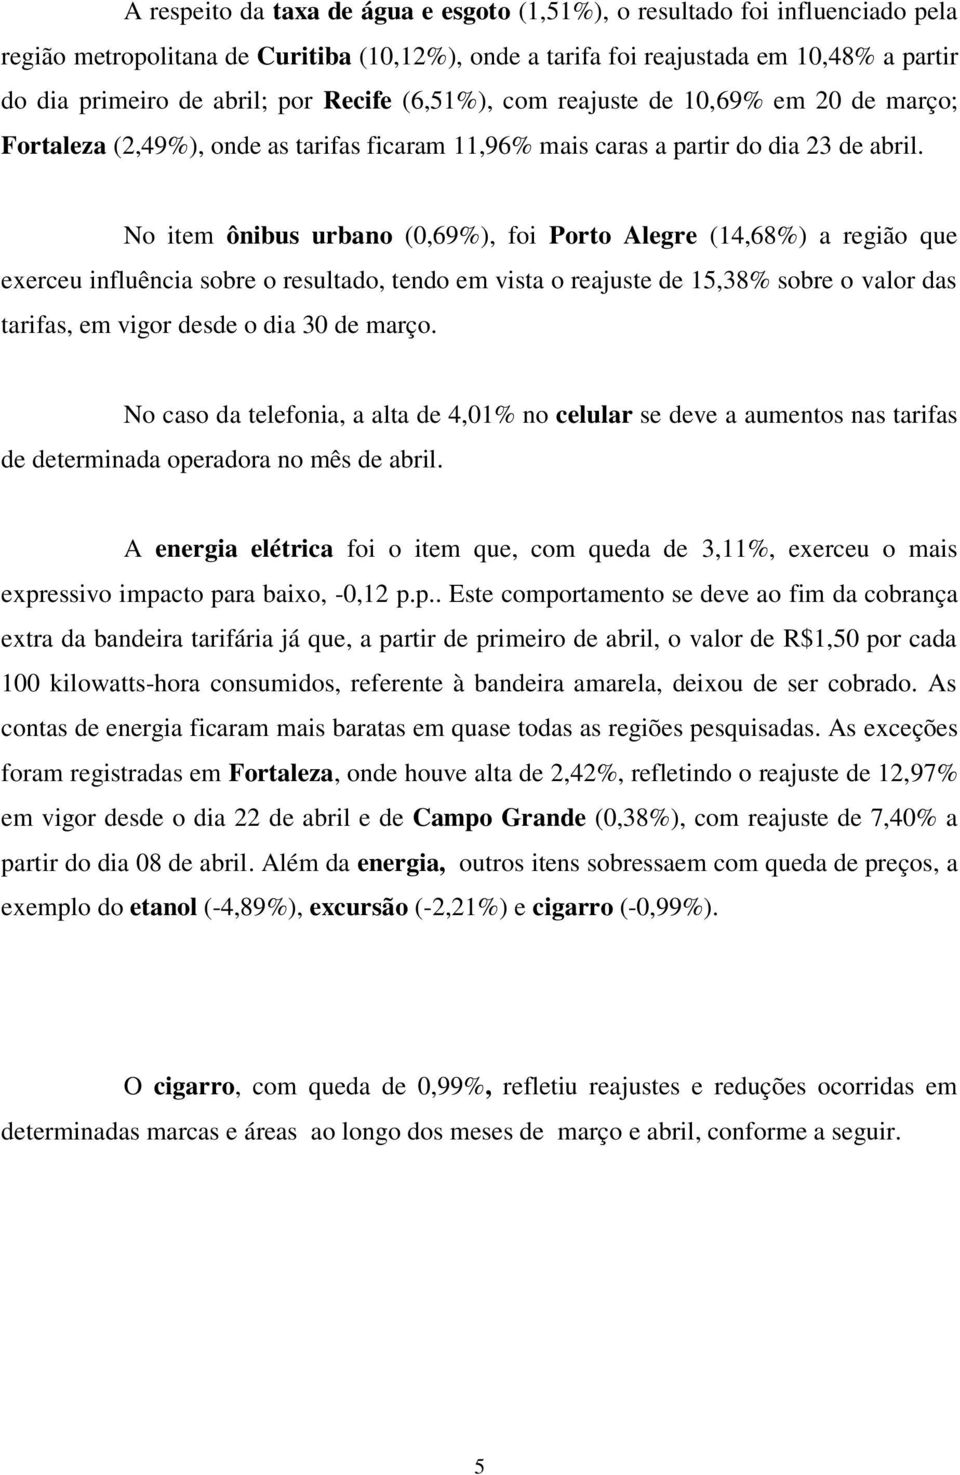 No item ônibus urbano (0,69%), foi Porto Alegre (14,68%) a região que exerceu influência sobre o resultado, tendo em vista o reajuste de 15,38% sobre o valor das tarifas, em vigor desde o dia 30 de